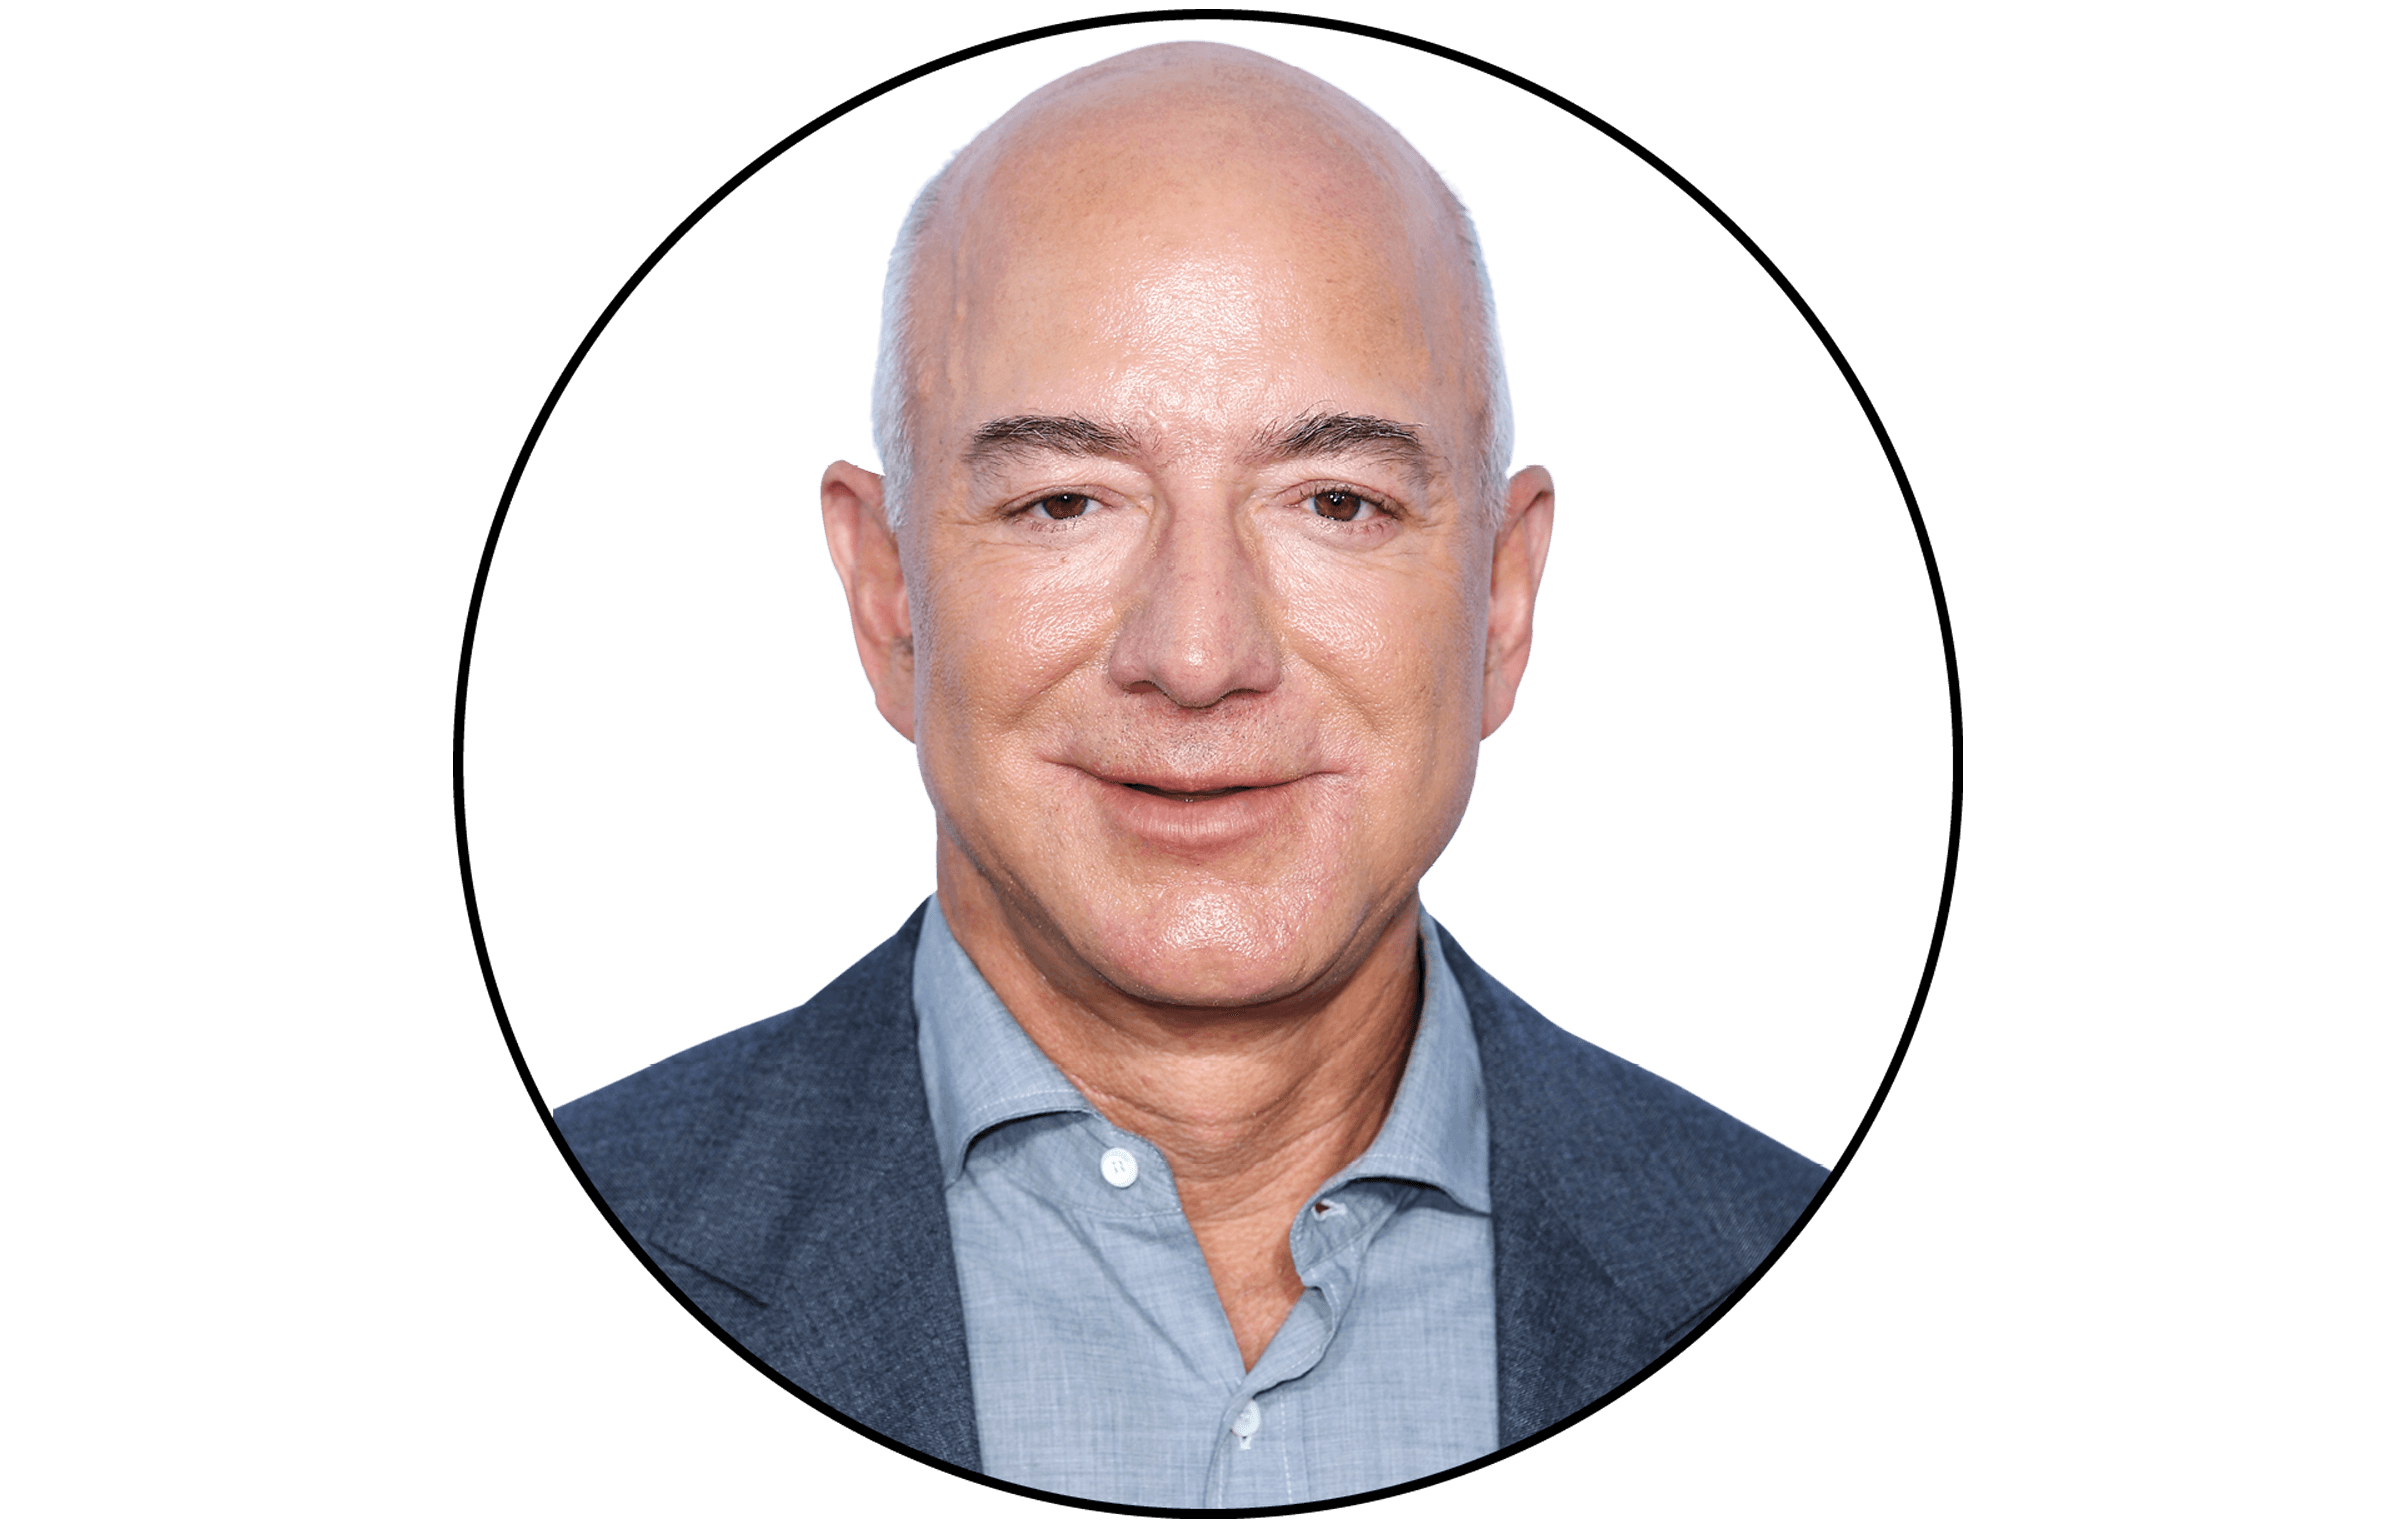 Headshot of Jeff Bezos